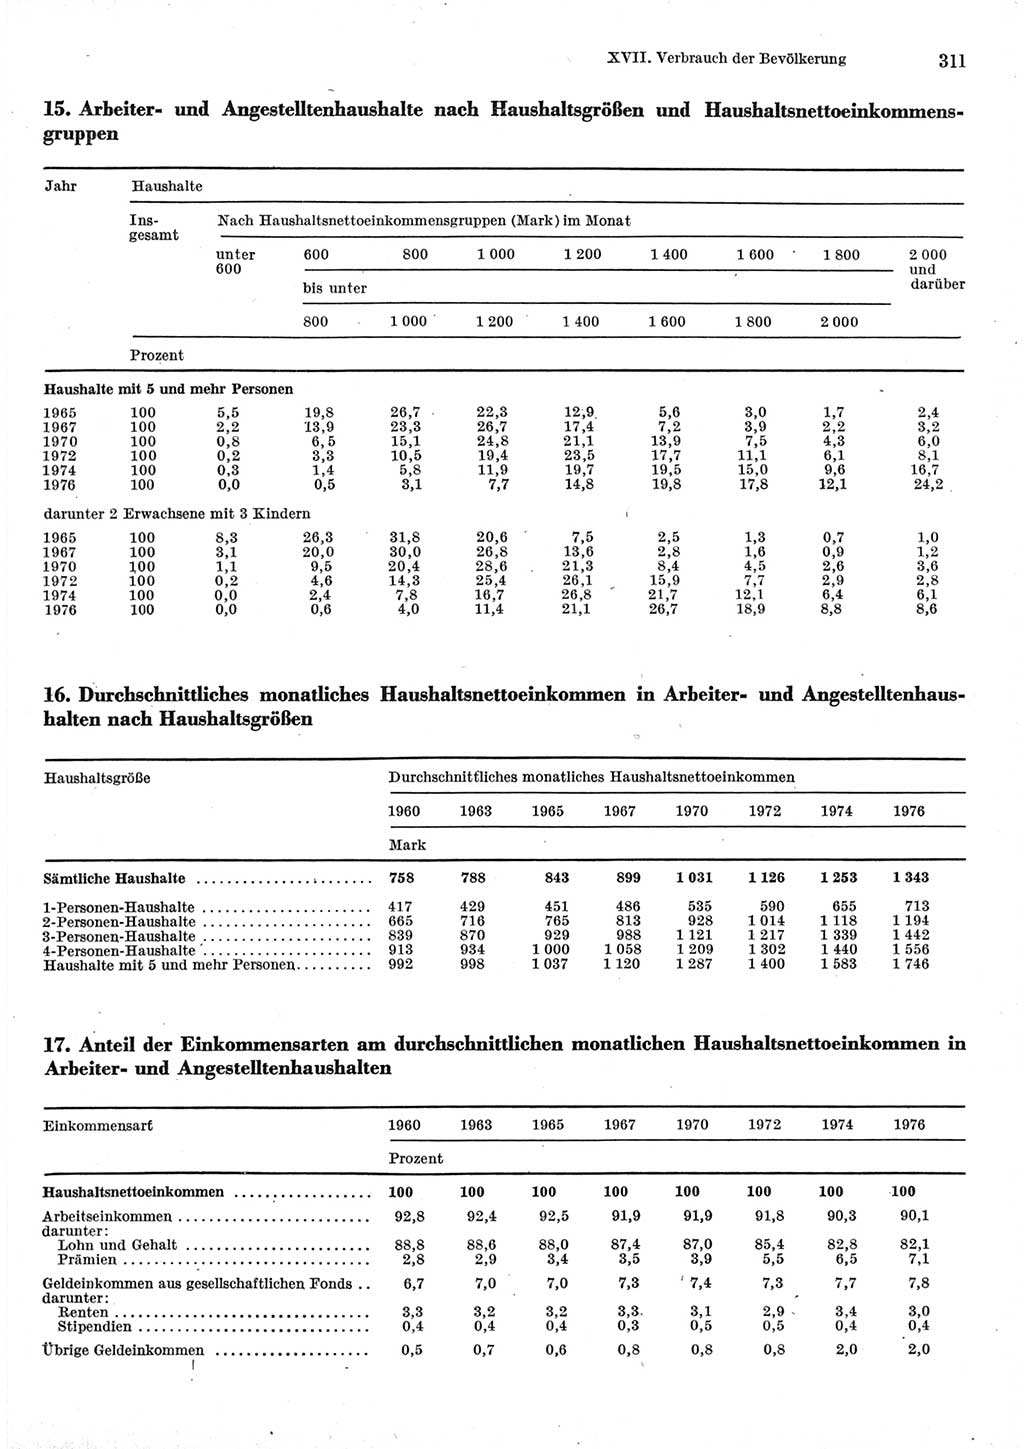 Statistisches Jahrbuch der Deutschen Demokratischen Republik (DDR) 1977, Seite 311 (Stat. Jb. DDR 1977, S. 311)